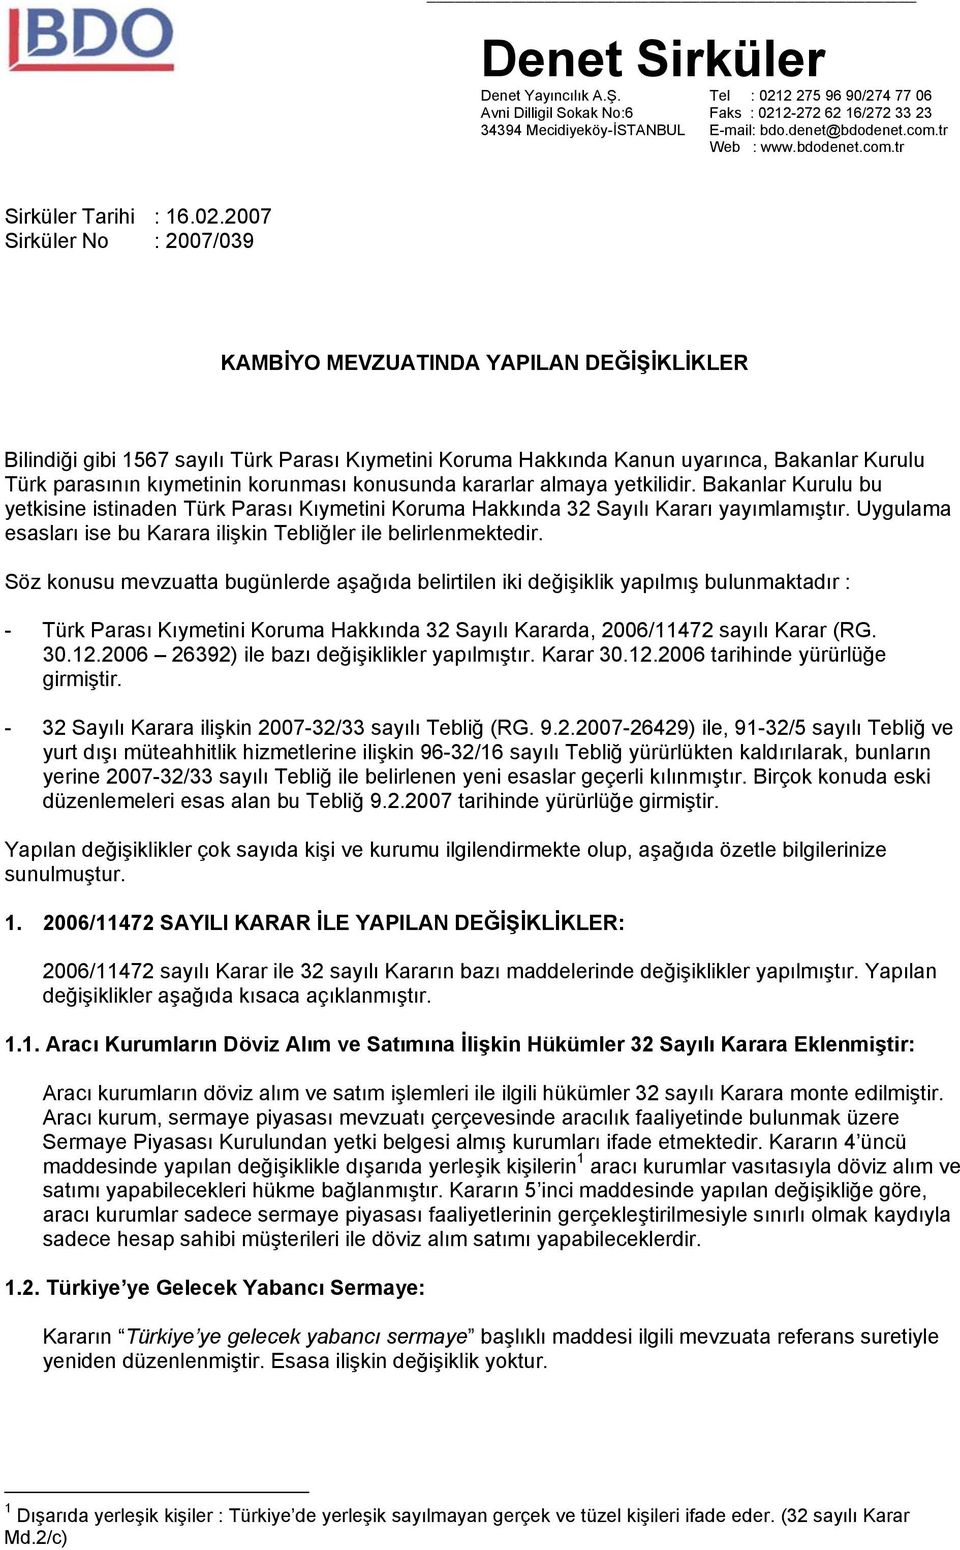 2007 Sirküler No : 2007/039 KAMBİYO MEVZUATINDA YAPILAN DEĞİŞİKLİKLER Bilindiği gibi 1567 sayılı Türk Parası Kıymetini Koruma Hakkında Kanun uyarınca, Bakanlar Kurulu Türk parasının kıymetinin